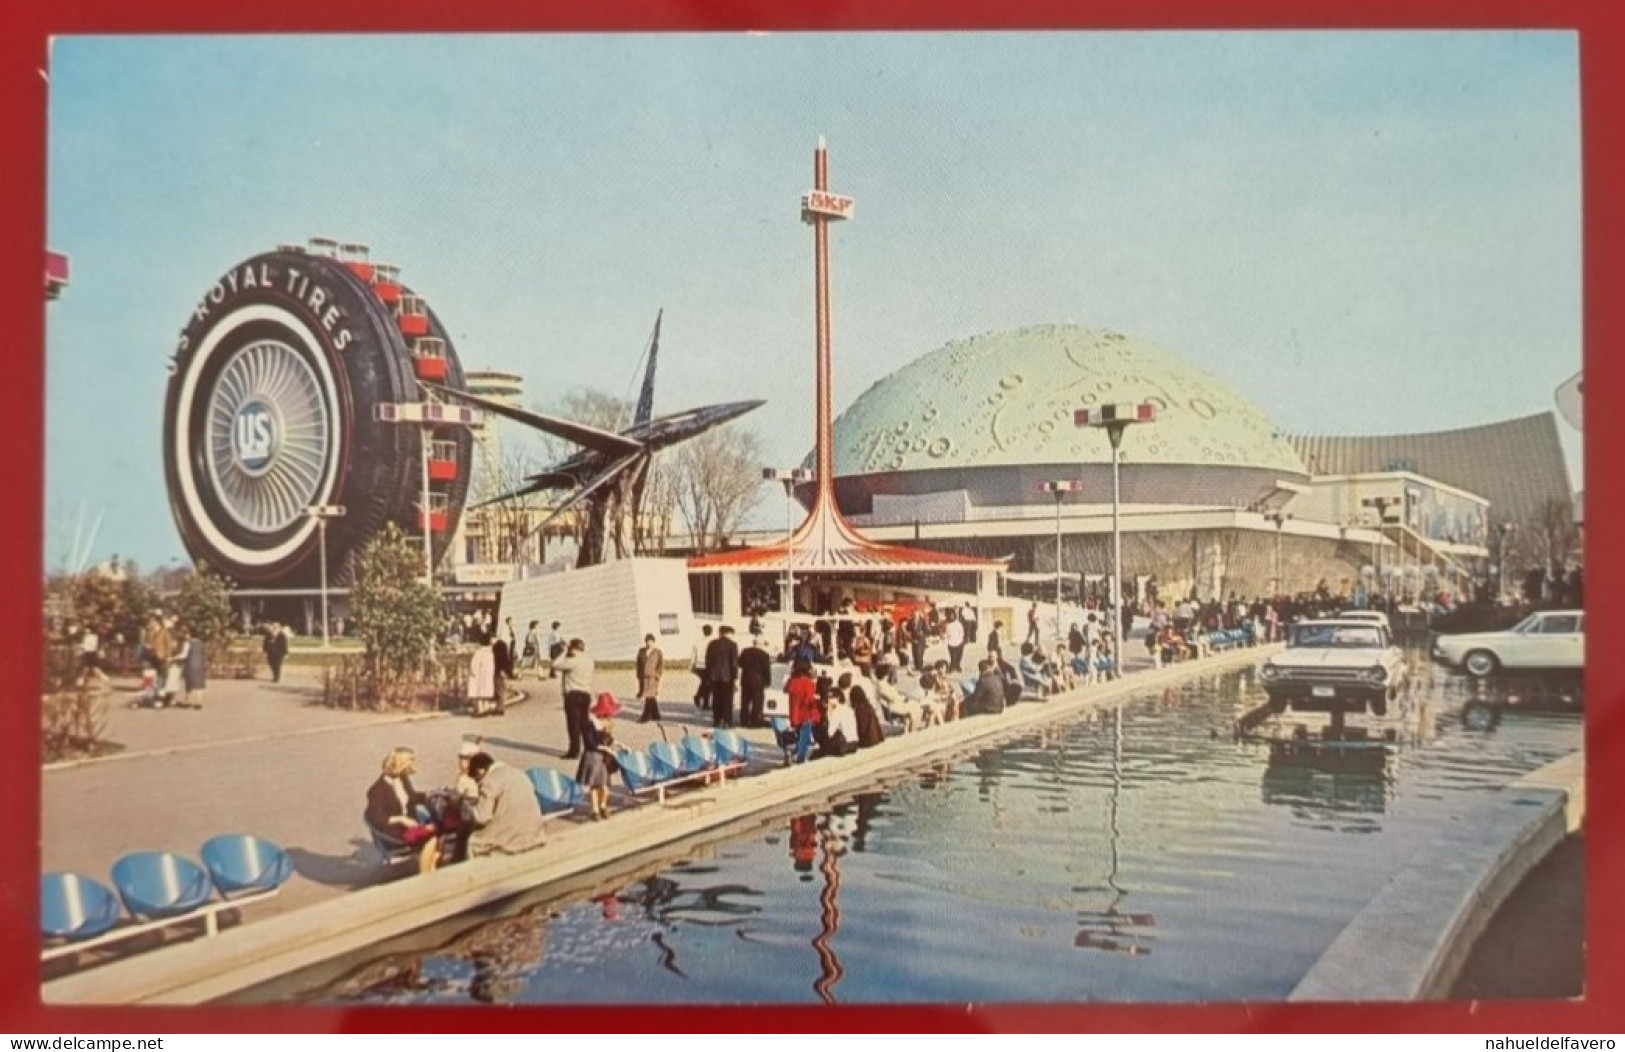 Uncirculated Postcard - USA - NY, NEW YORK WORLD'S FAIR 1964-65 - TRANSPORTATION AREA - Ausstellungen